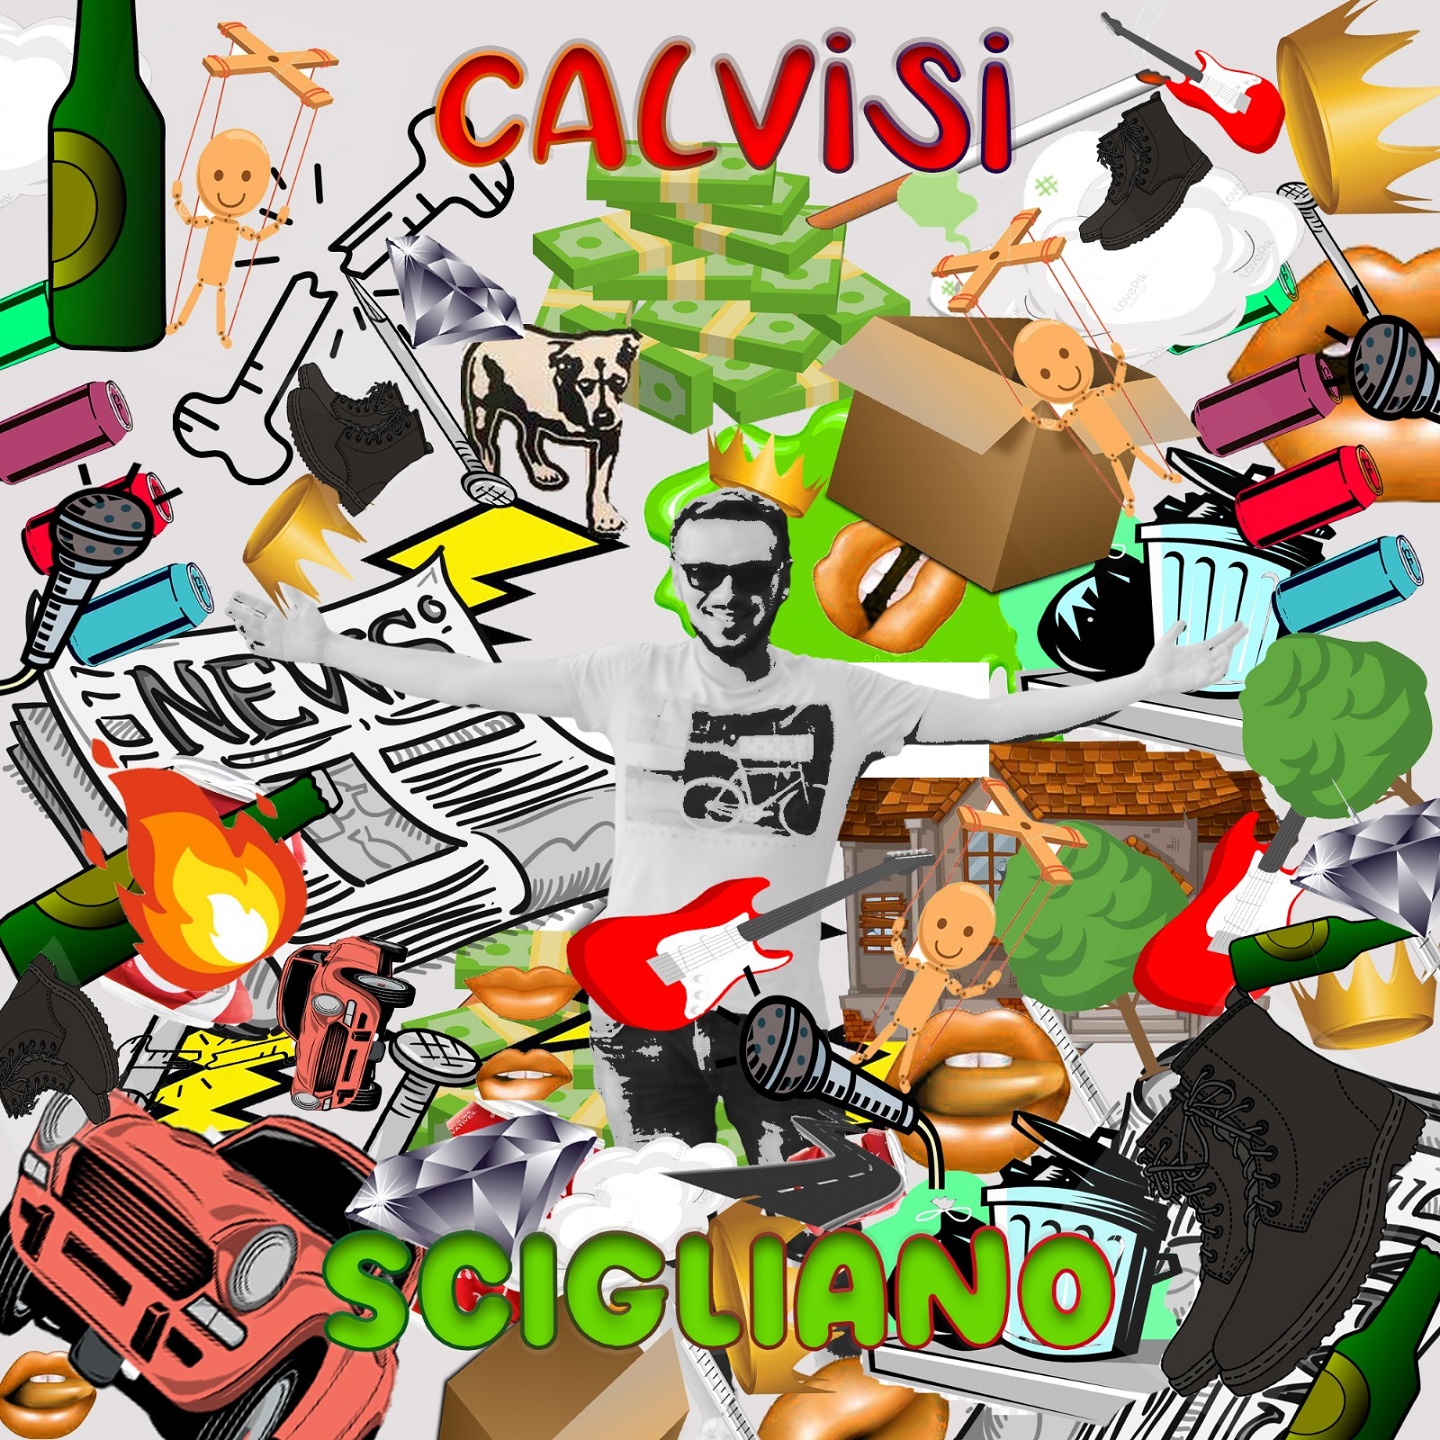 “Scigliano” il singolo d’esordio del cantautore cosentino Calvisi